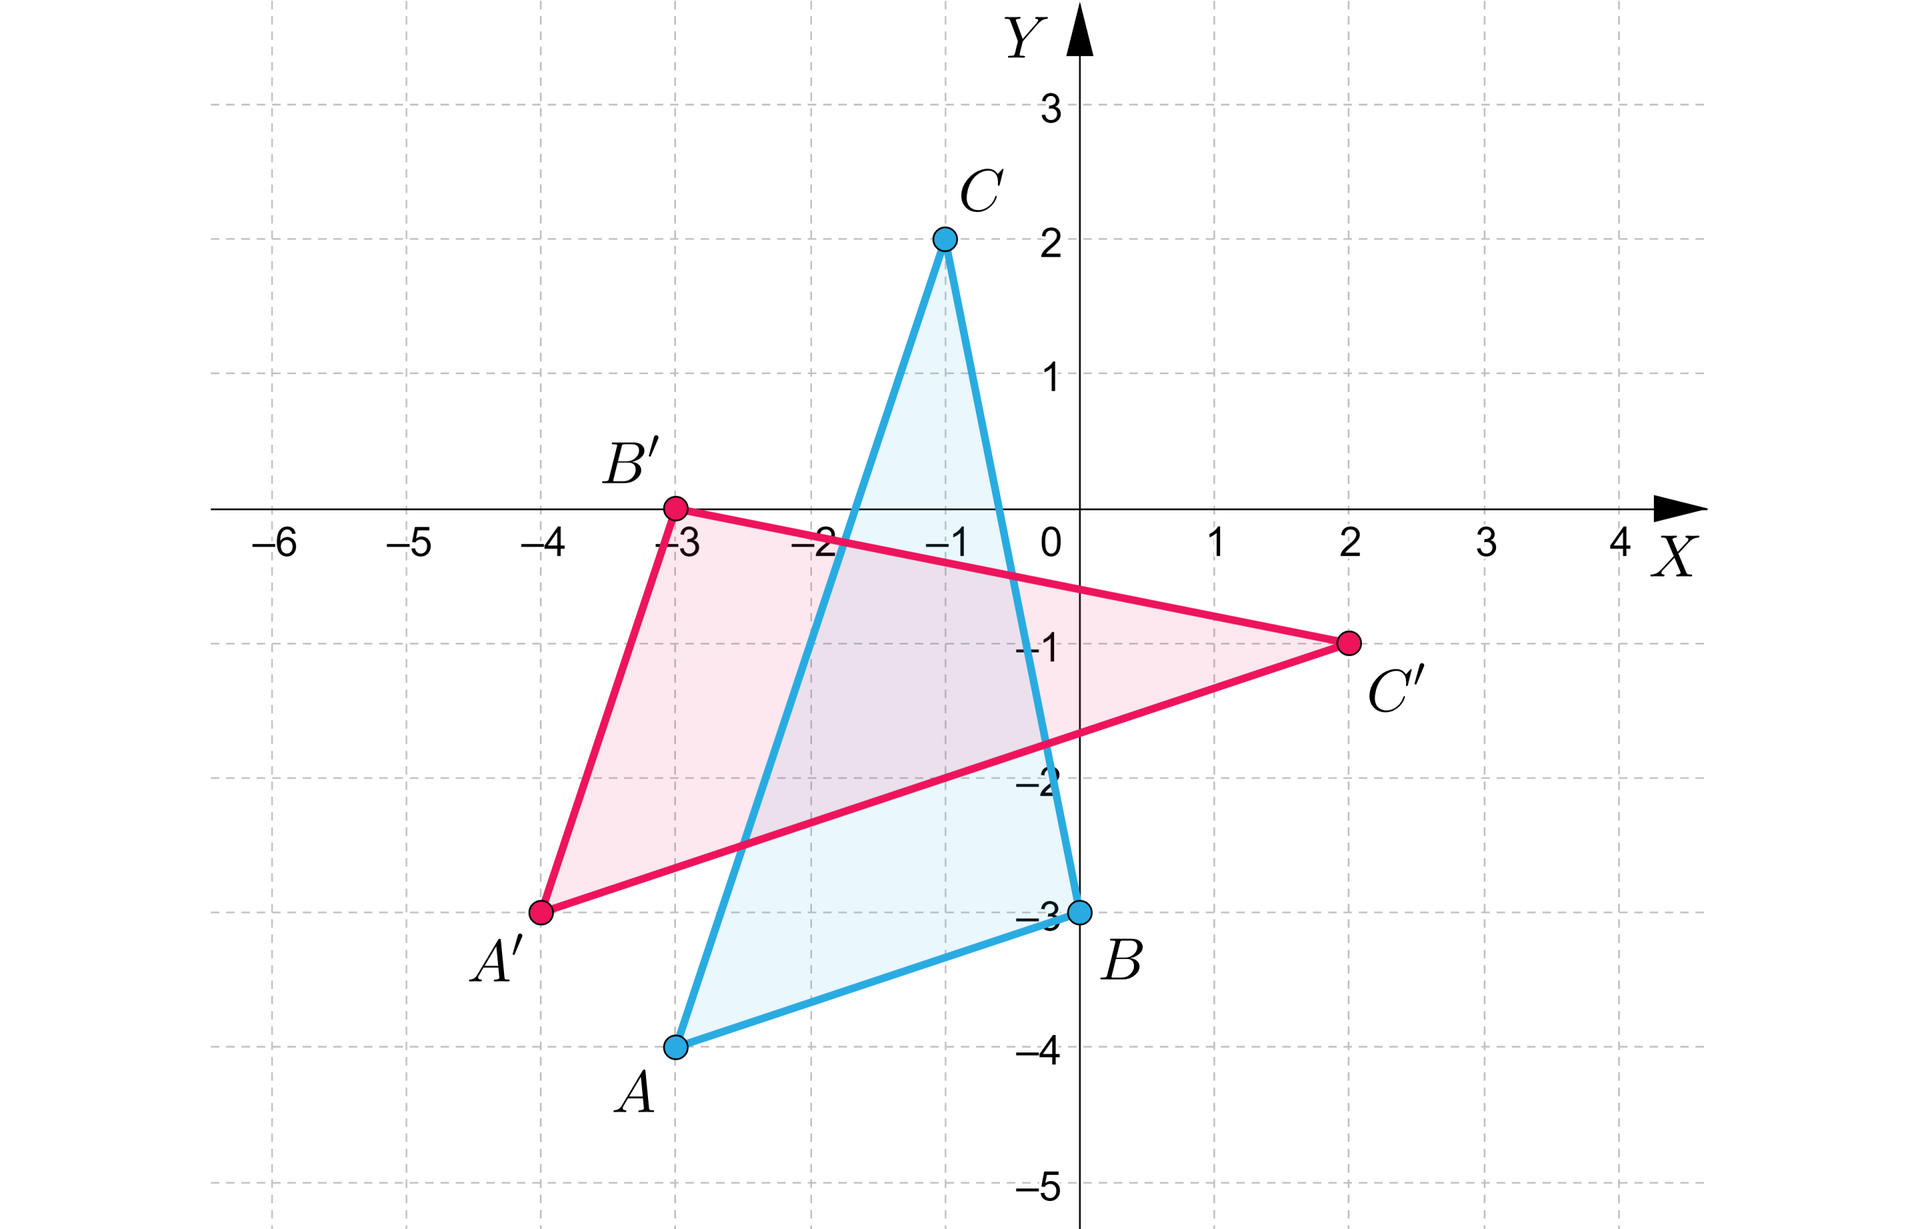 Grafika przedstawia układ współrzędnych o pionowej osi y od minus 5 do 3 i poziomej osi x od minus 6 do czterech. Na płaszczyźnie znajdują się dwa trójkąty. Pierwszy o wierzchołkach: A, B, C. Punkt A ma współrzędne: nawias, minus 3, minus 4, zamknięcie nawiasu. Punkt B ma współrzędne: nawias, 0, minus 3, zamknięcie nawiasu. Punkt C ma współrzędne: nawias, minus 1, 2, zamknięcie nawiasu. Drugi o wierzchołkach: A’, B’, C’. Punkt A’ ma współrzędne: nawias, minus 4, minus 3, zamknięcie nawiasu. Punkt B’ ma współrzędne: nawias, minus 3, 0, zamknięcie nawiasu. Punkt C’ ma współrzędne: nawias, 2, minus 1, zamknięcie nawiasu.